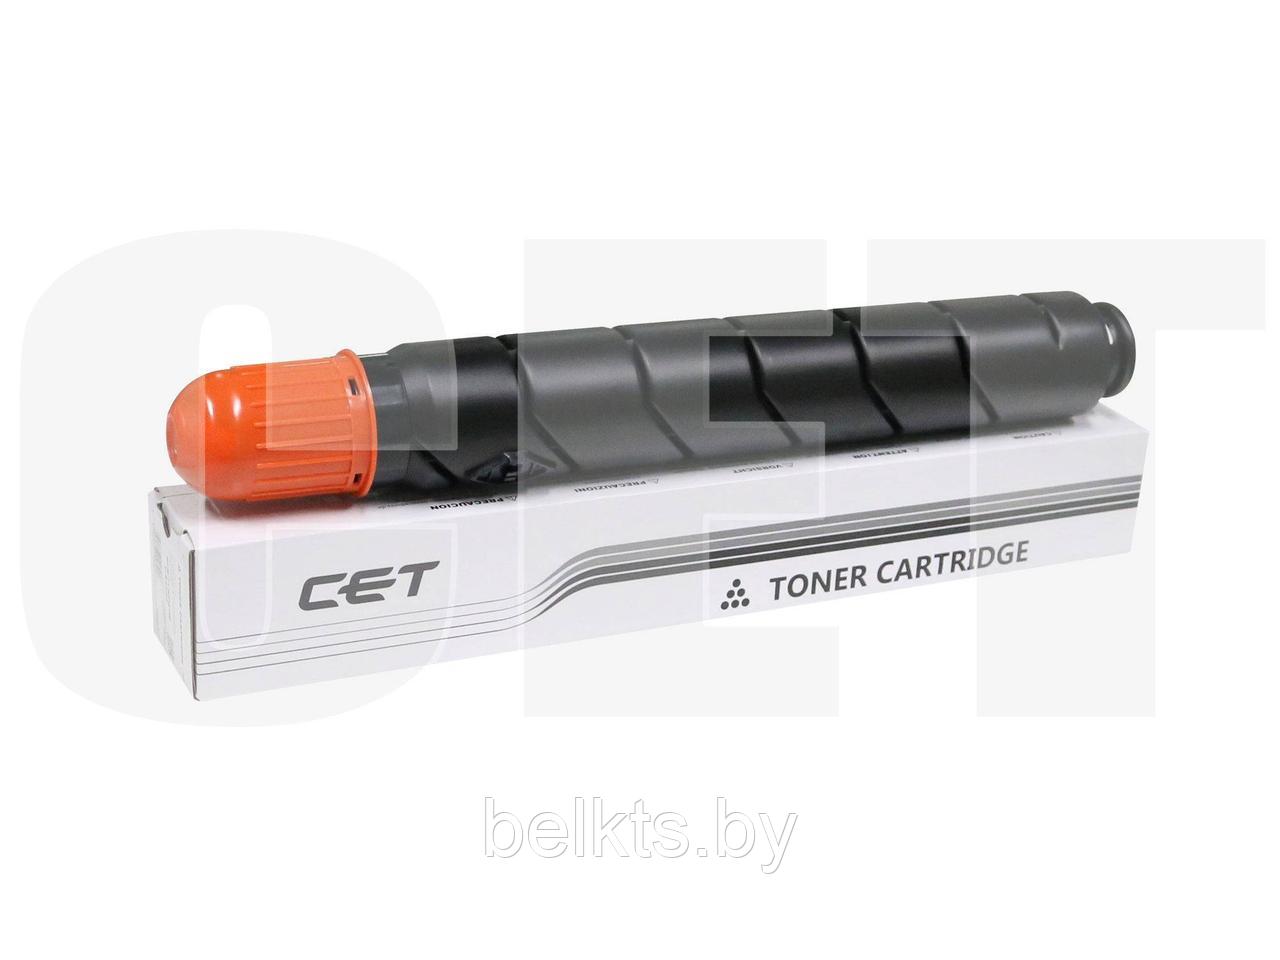 Тонер-картридж C-EXV28 для CANON iR ADVANCE C5045/C5051/C5250/C5255 (CET) Black, 980г, 44000 стр., CET5326